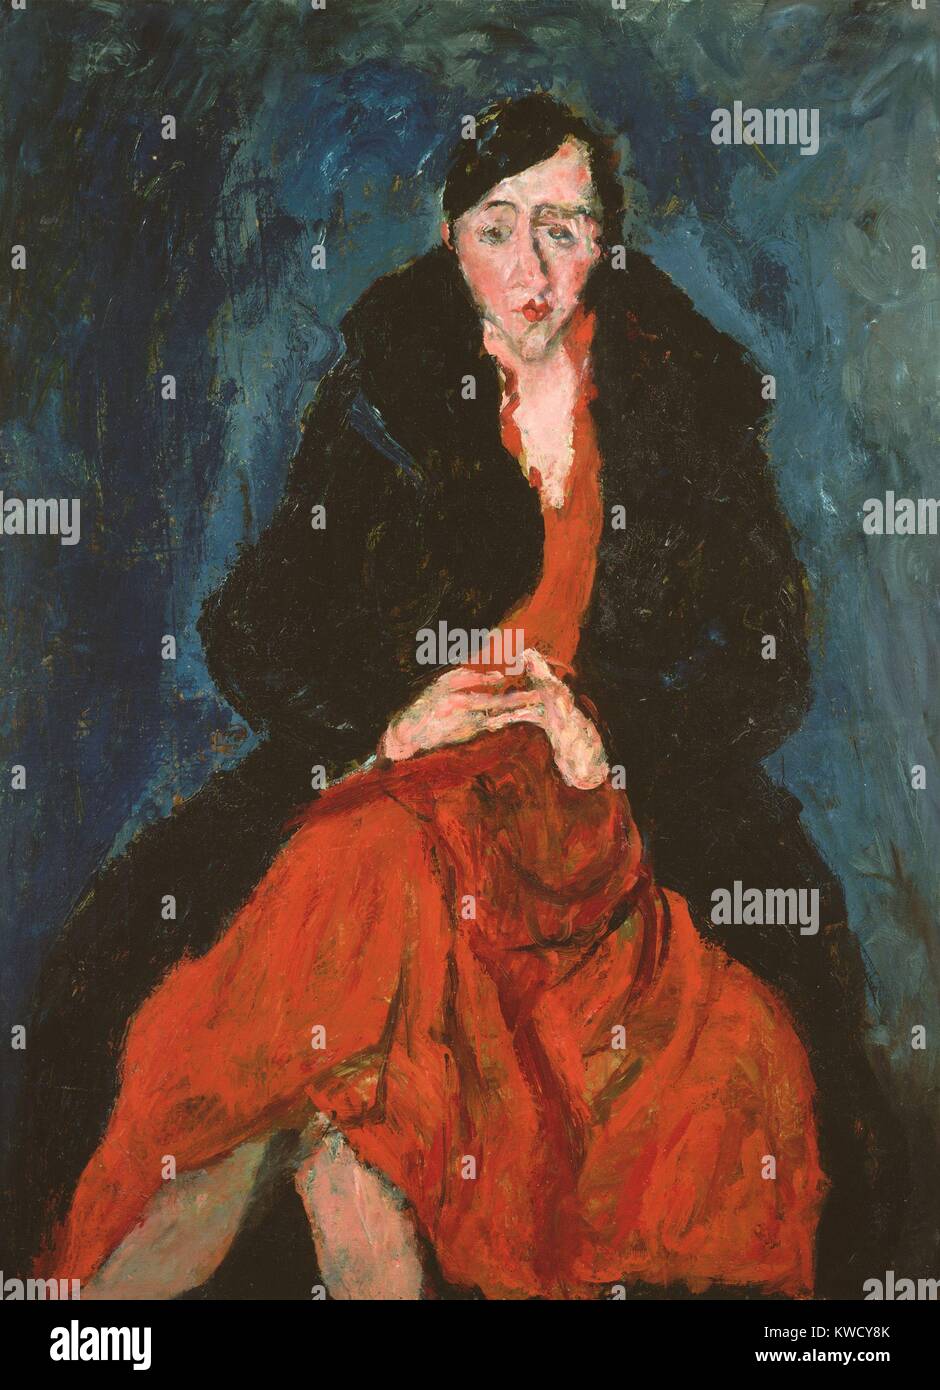 Portrait de Madeleine Castaing, par Chaïm Soutine, 1929, huile sur toile expressionniste Français Russe. Madeleine Castaing et son mari ont été ses protecteurs quand il peint cette toile (BSLOC 2017 5 150) Banque D'Images